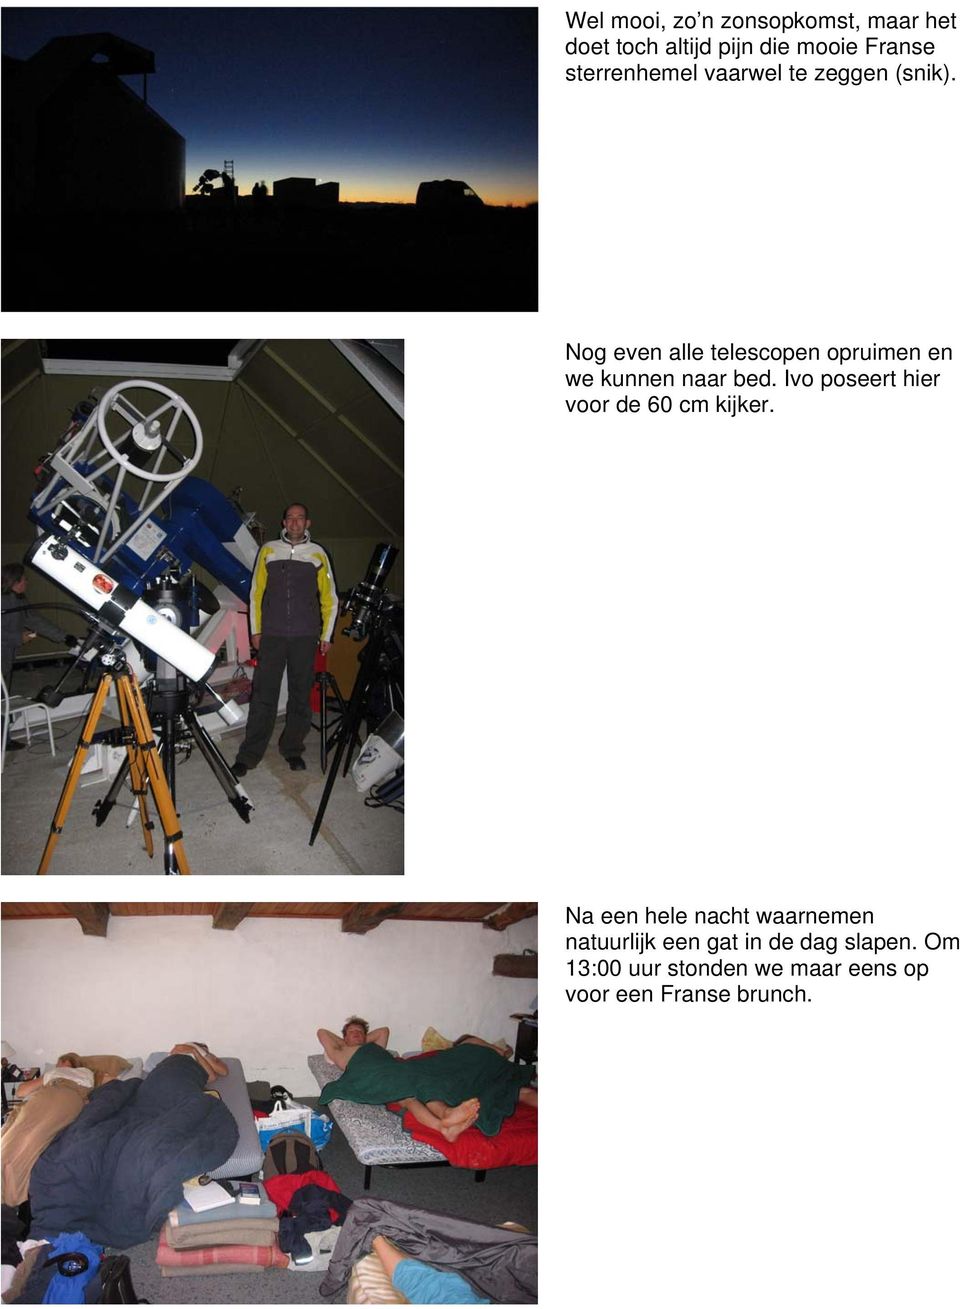 Nog even alle telescopen opruimen en we kunnen naar bed.